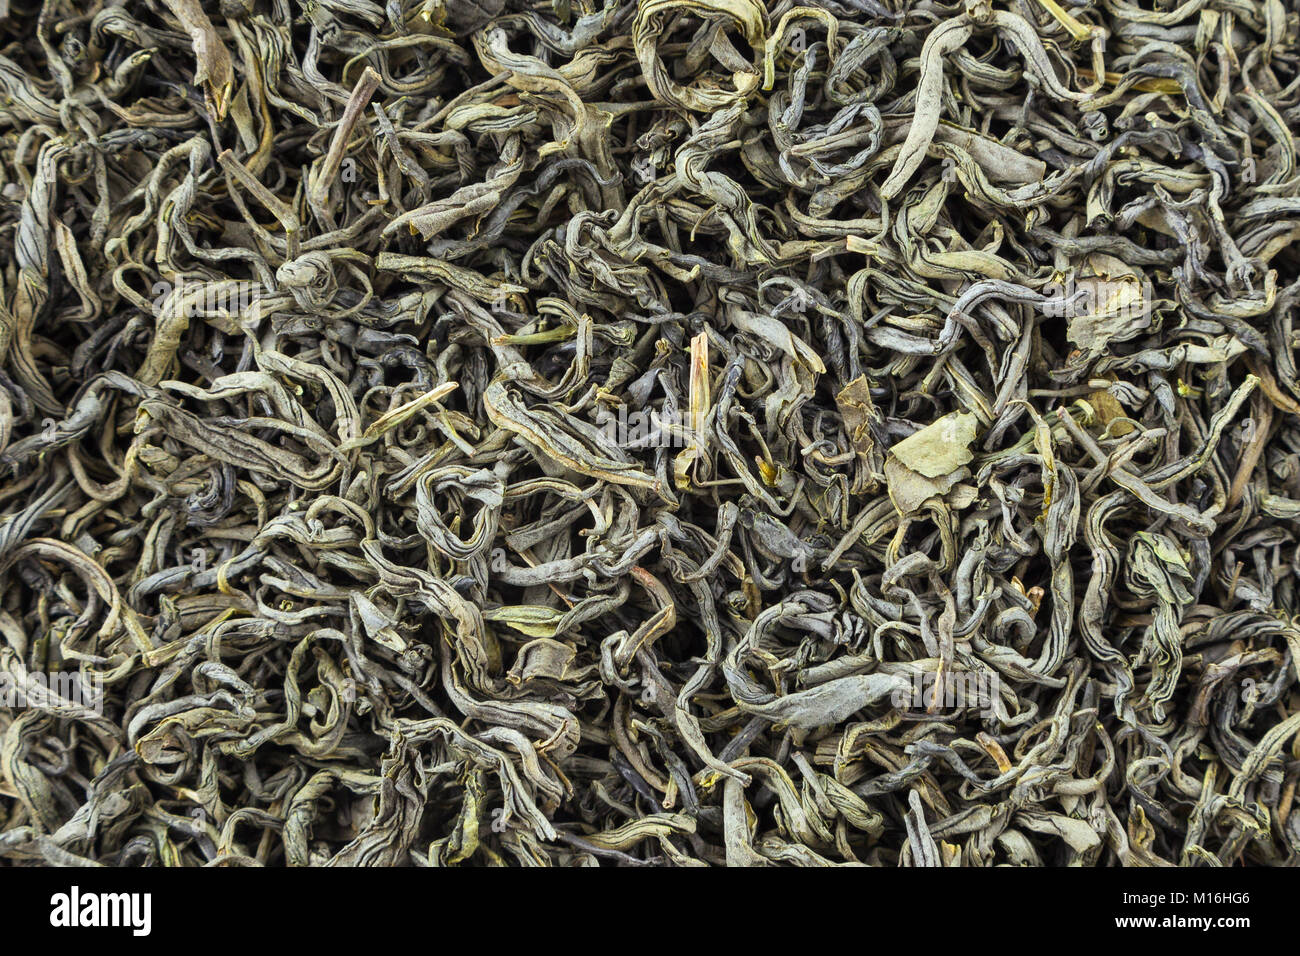 Herbes de thé de texture. Le thé vert. Feuilles de thé vert séchées bio. Banque D'Images